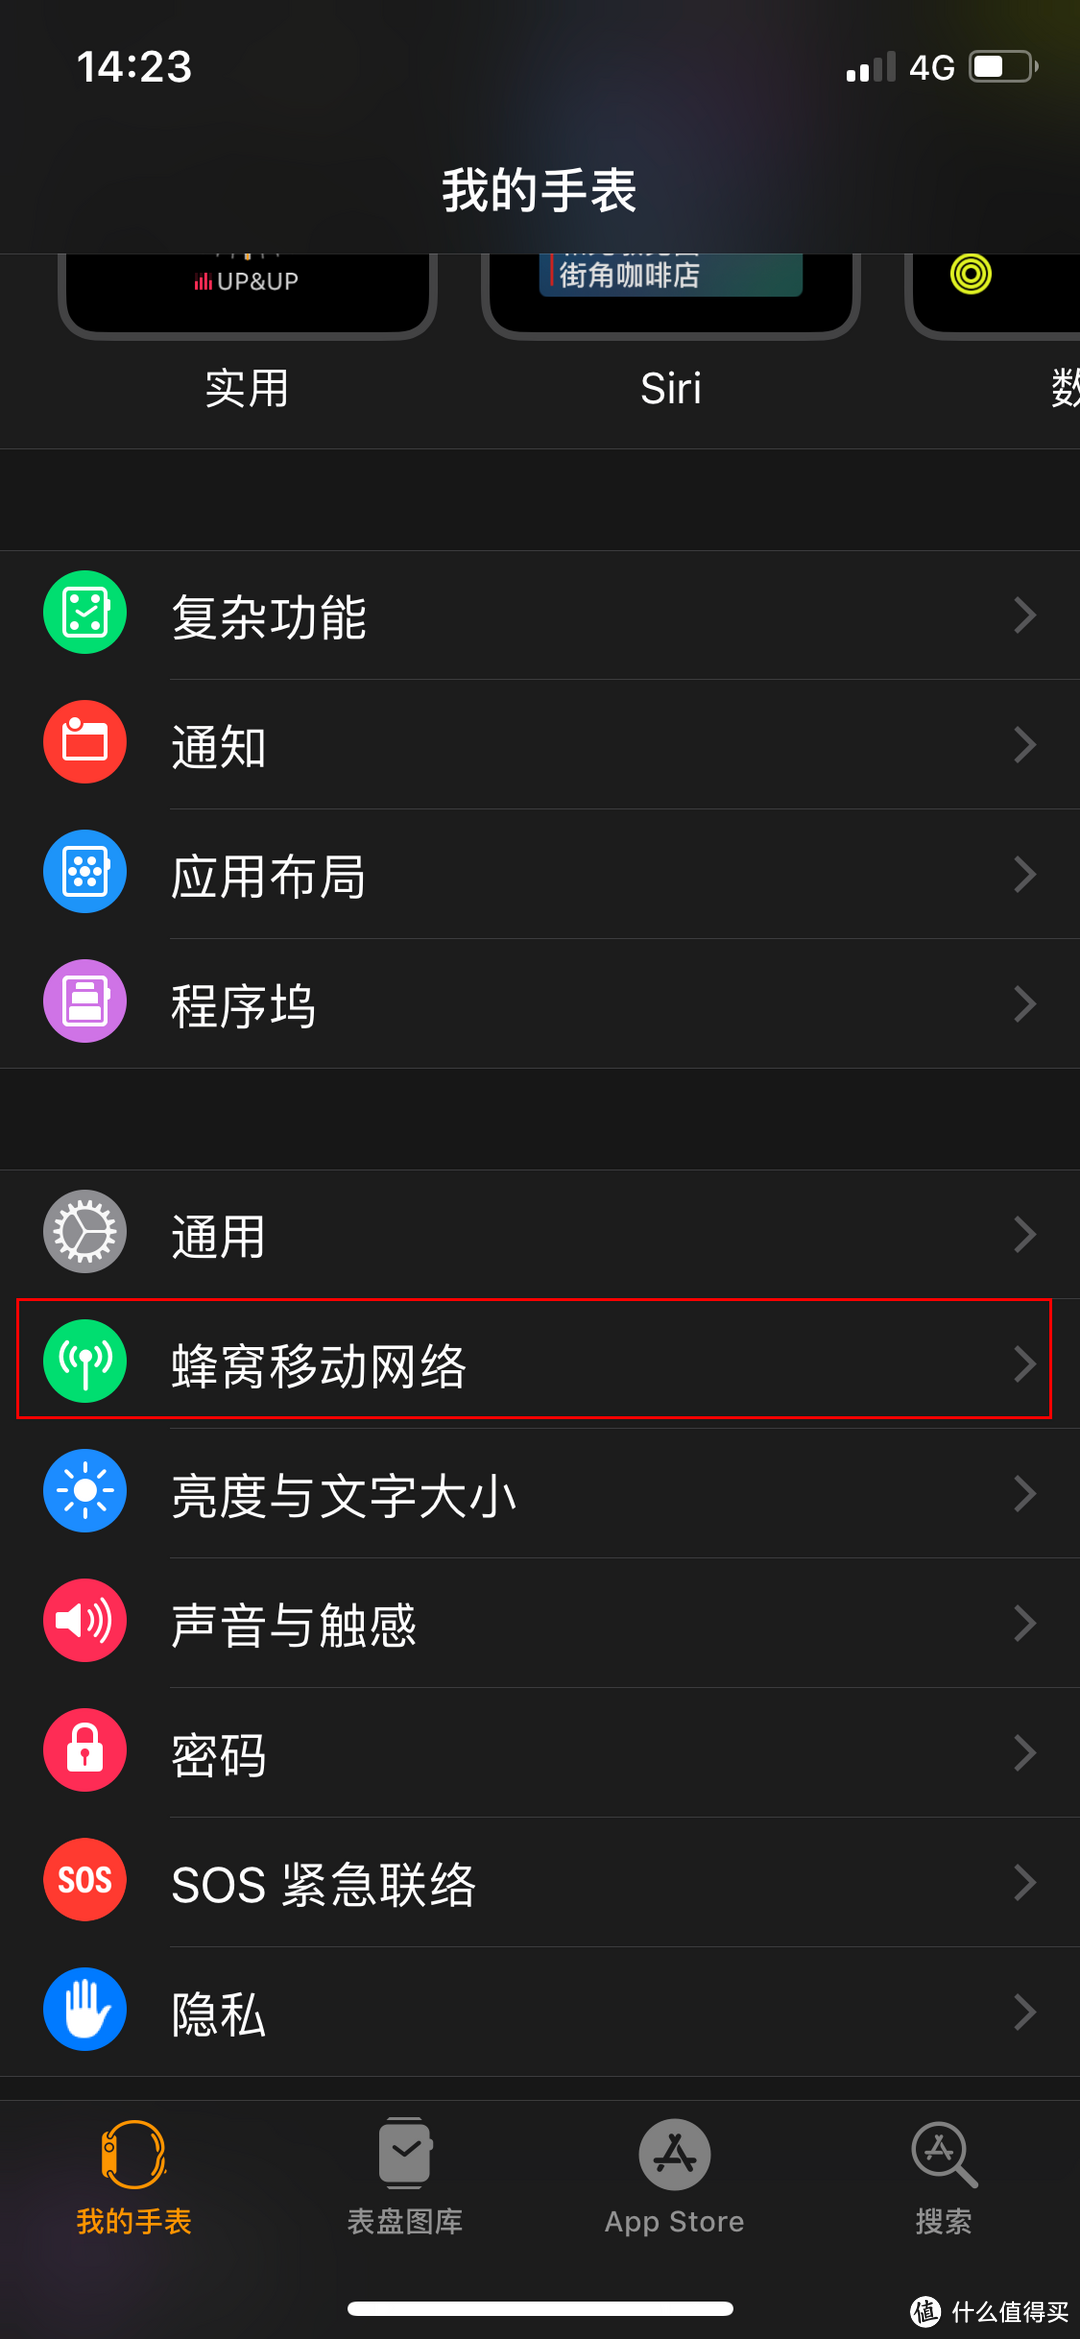 蜂窝数据版 Apple Watch 开通中国电信 eSIM 体验